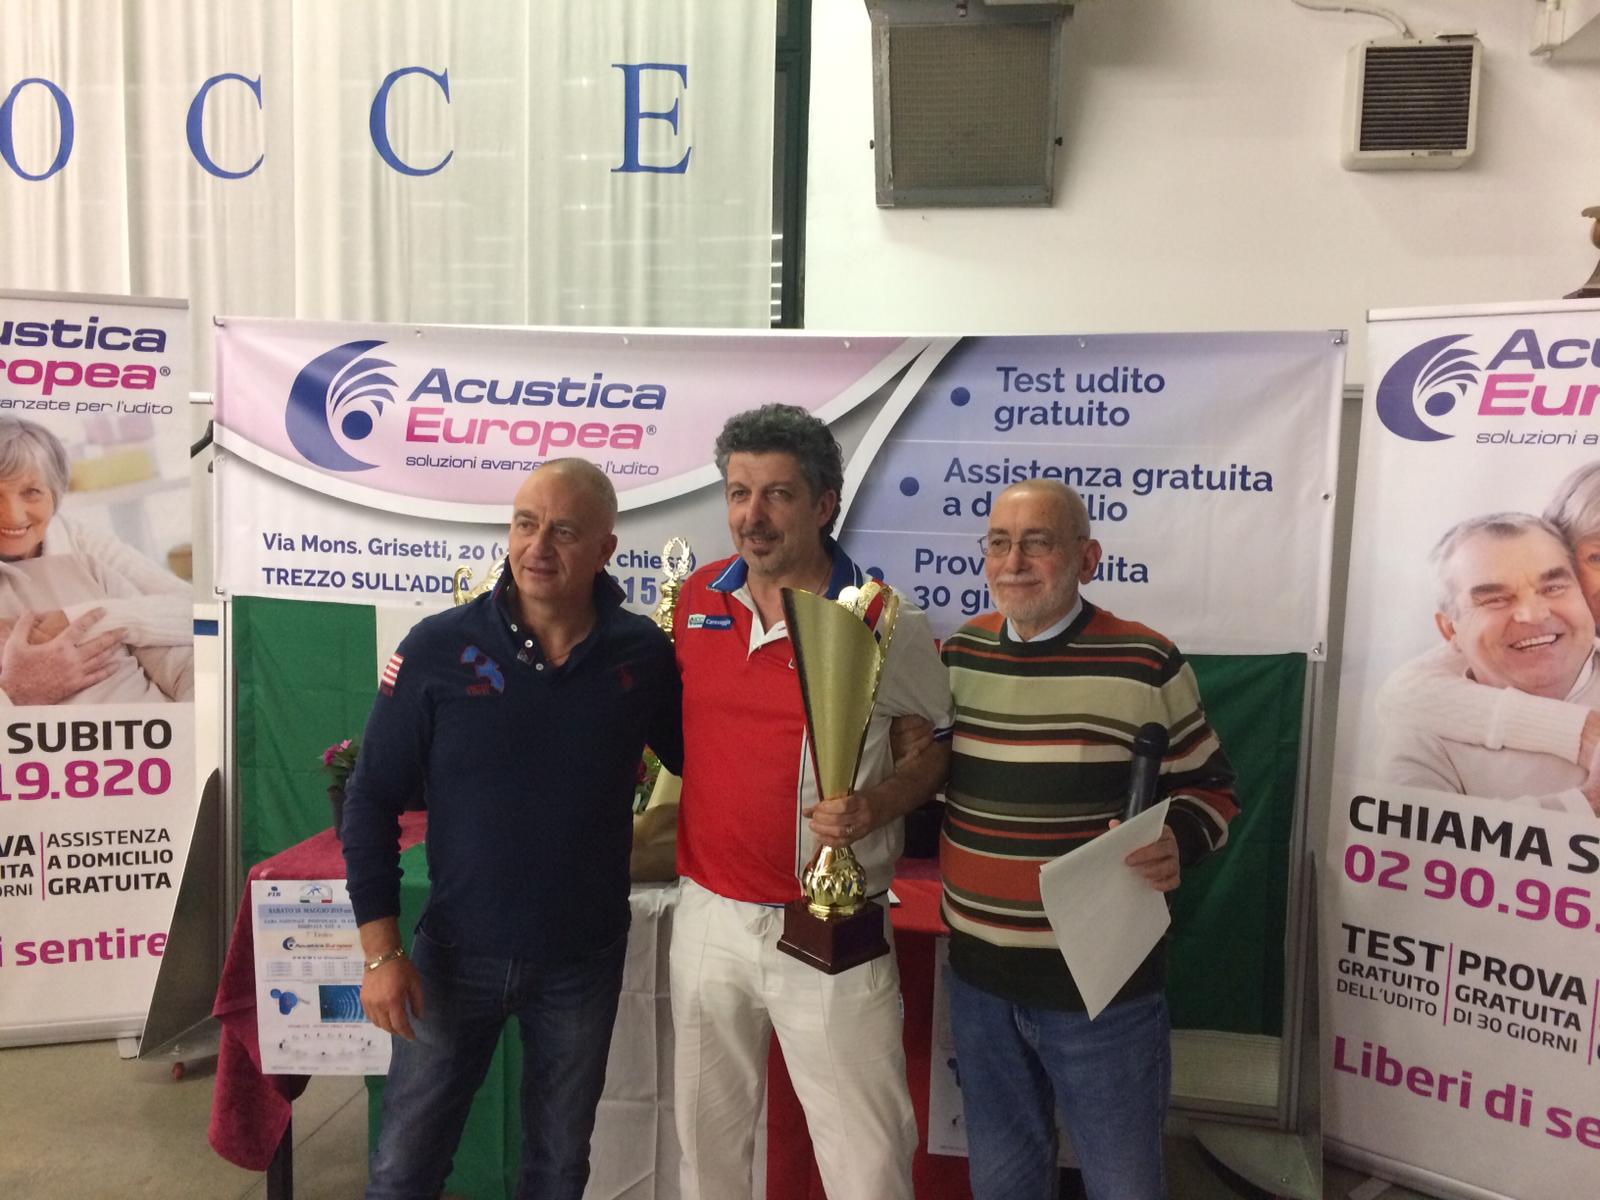 Le premiazioni della settima edizione del Trofeo Acustica europea di bocce a Trezzo sull'Adda